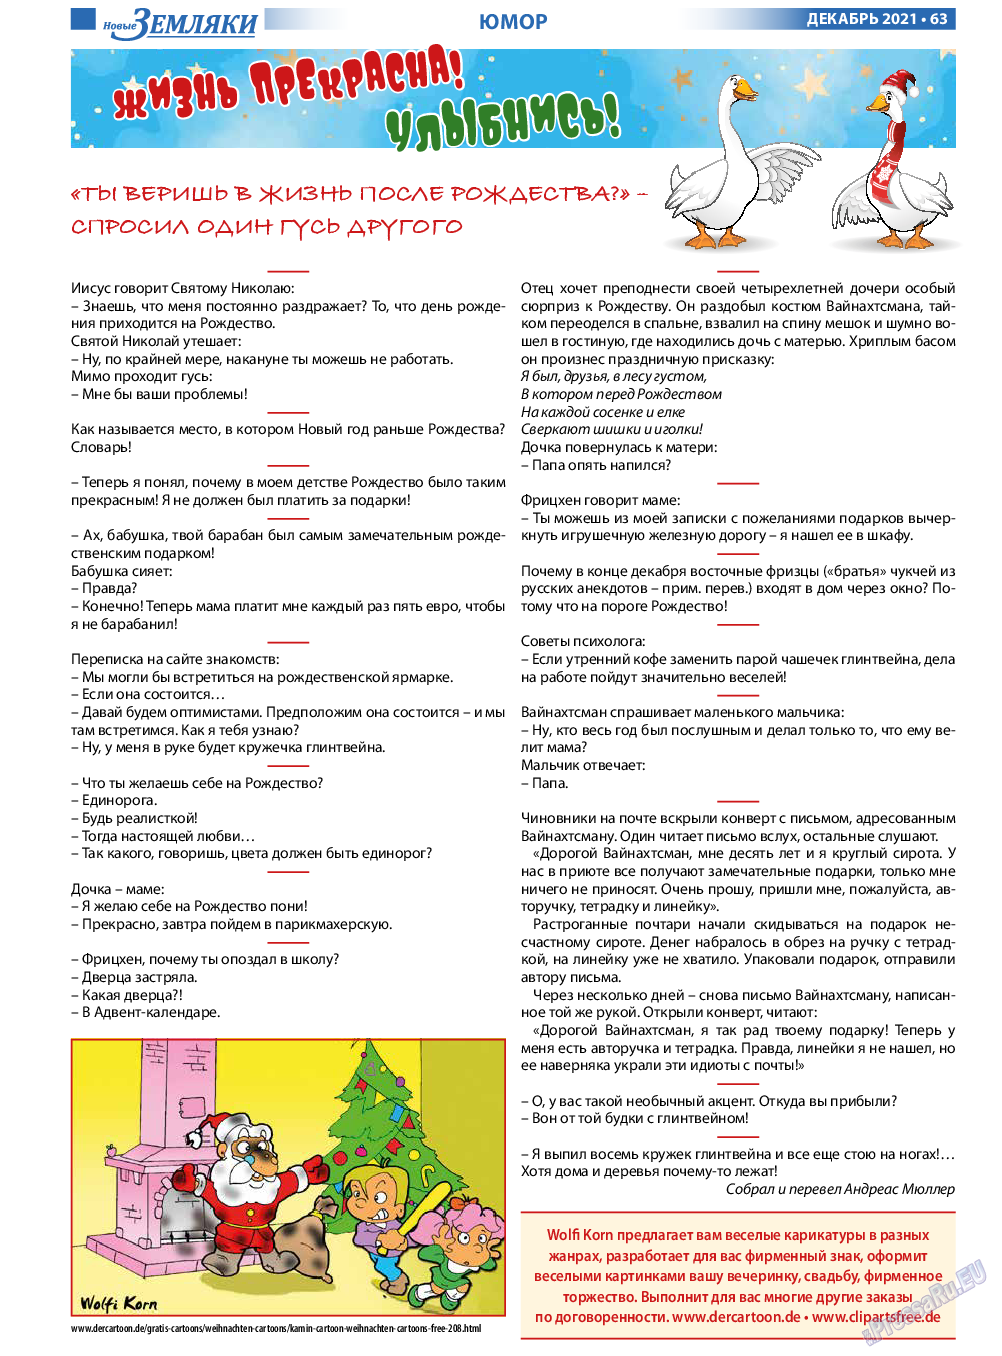 Новые Земляки, газета. 2021 №12 стр.63